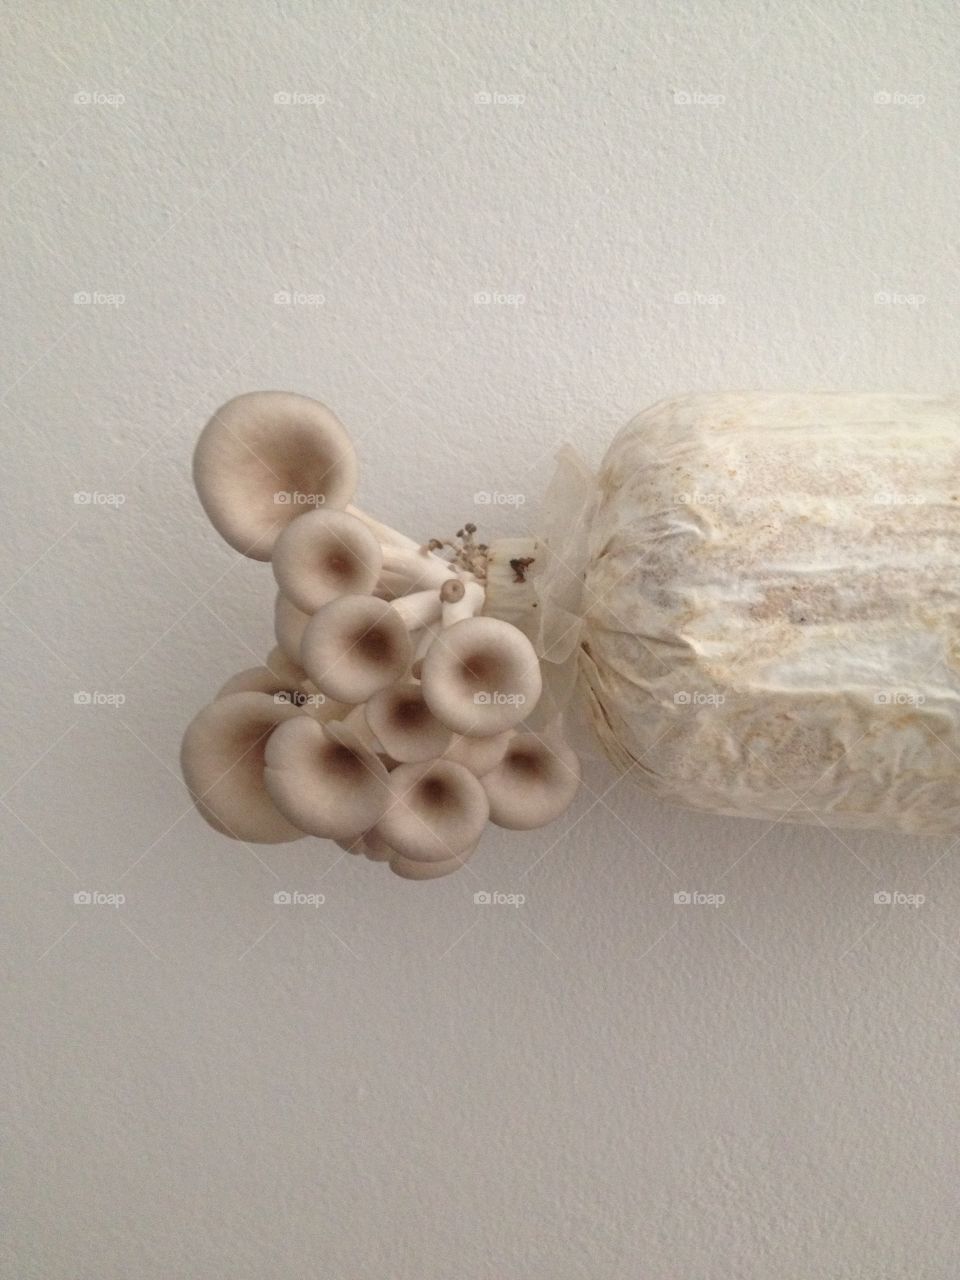 Mushroom growth.